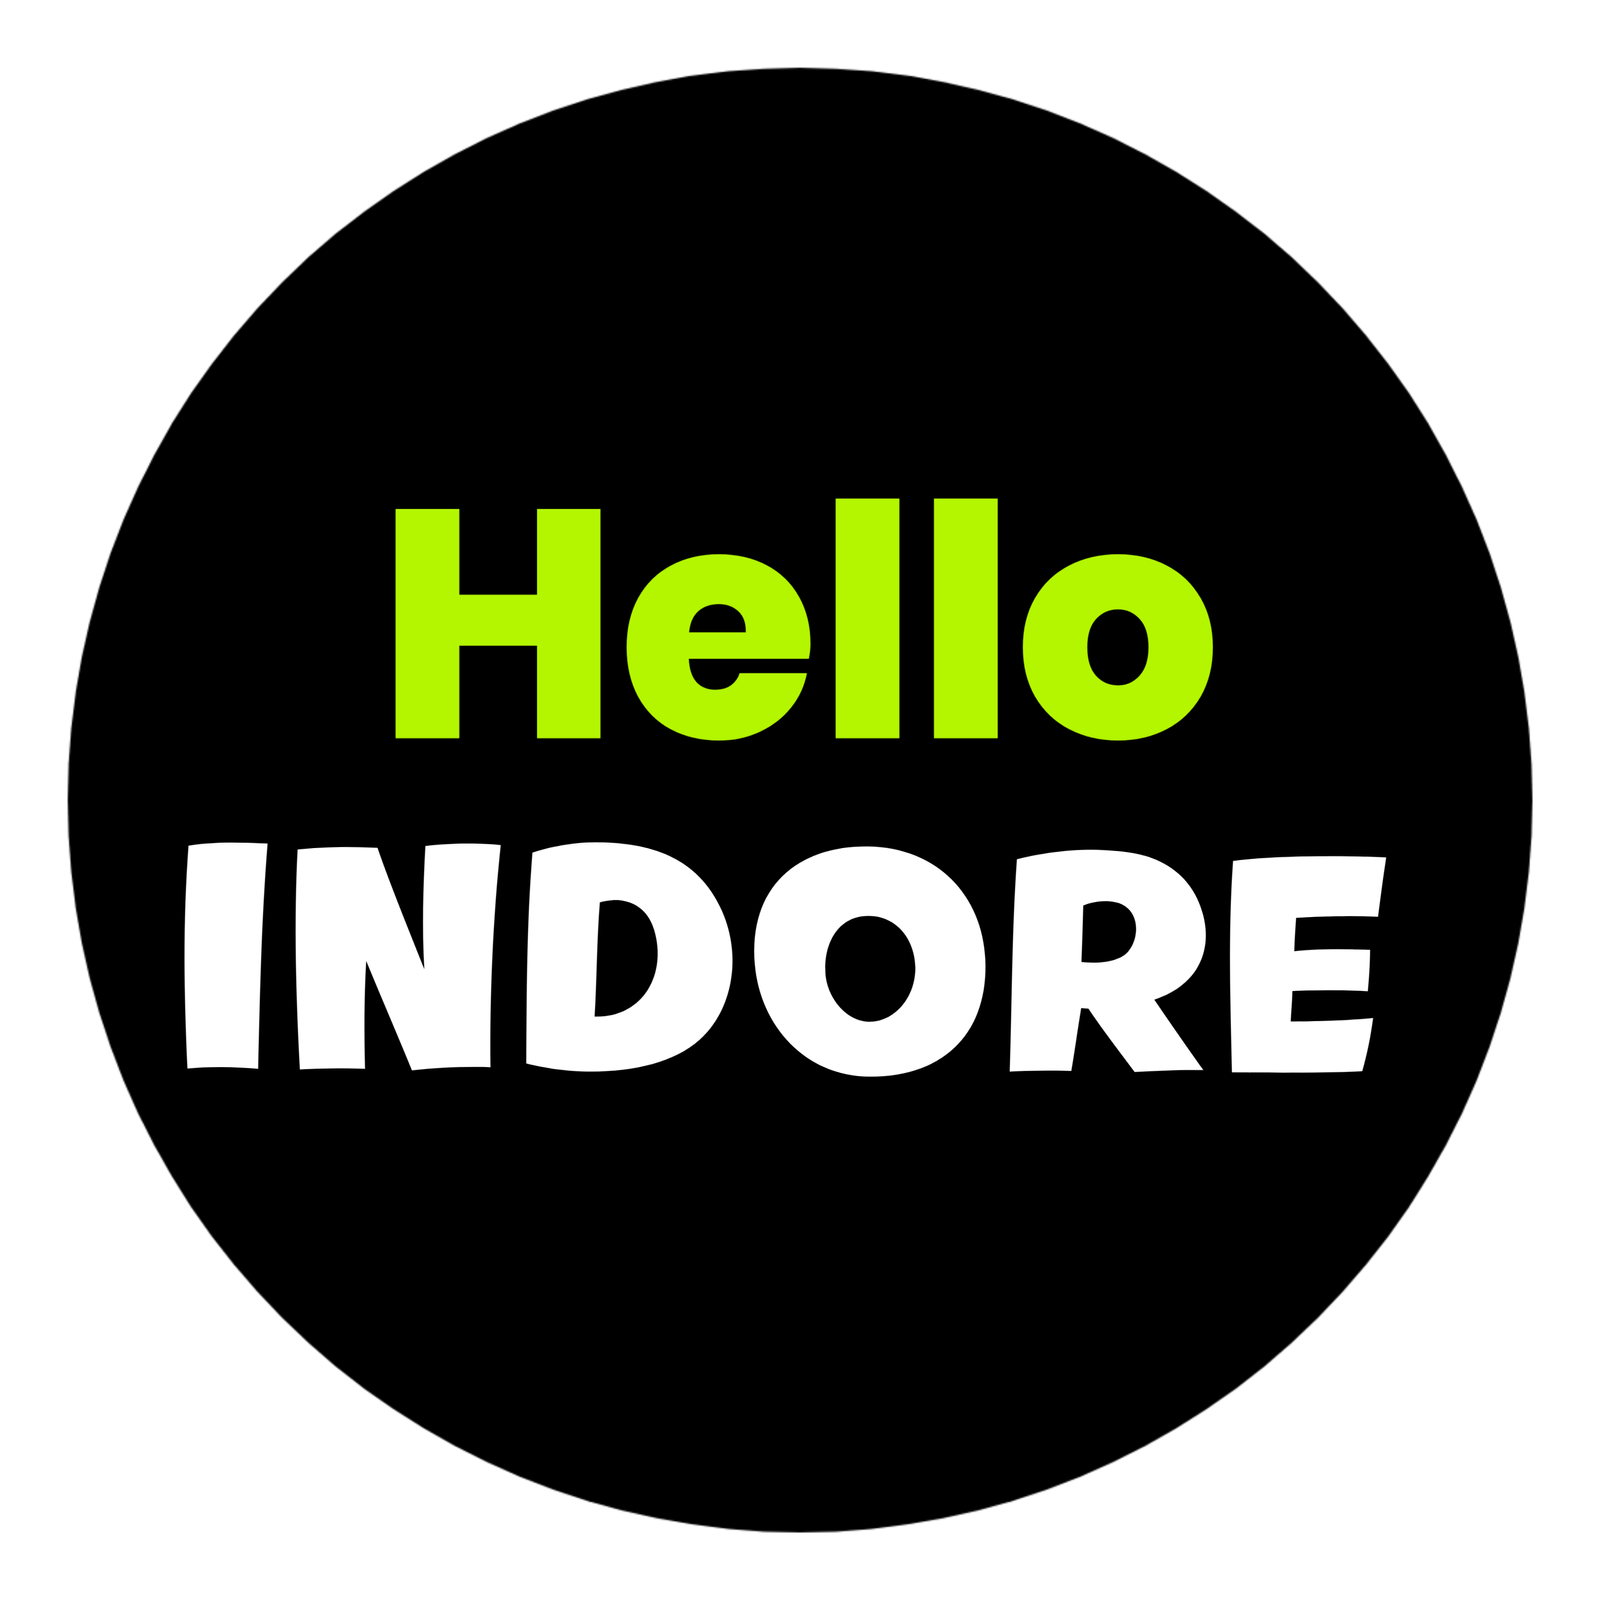 Hello Indore